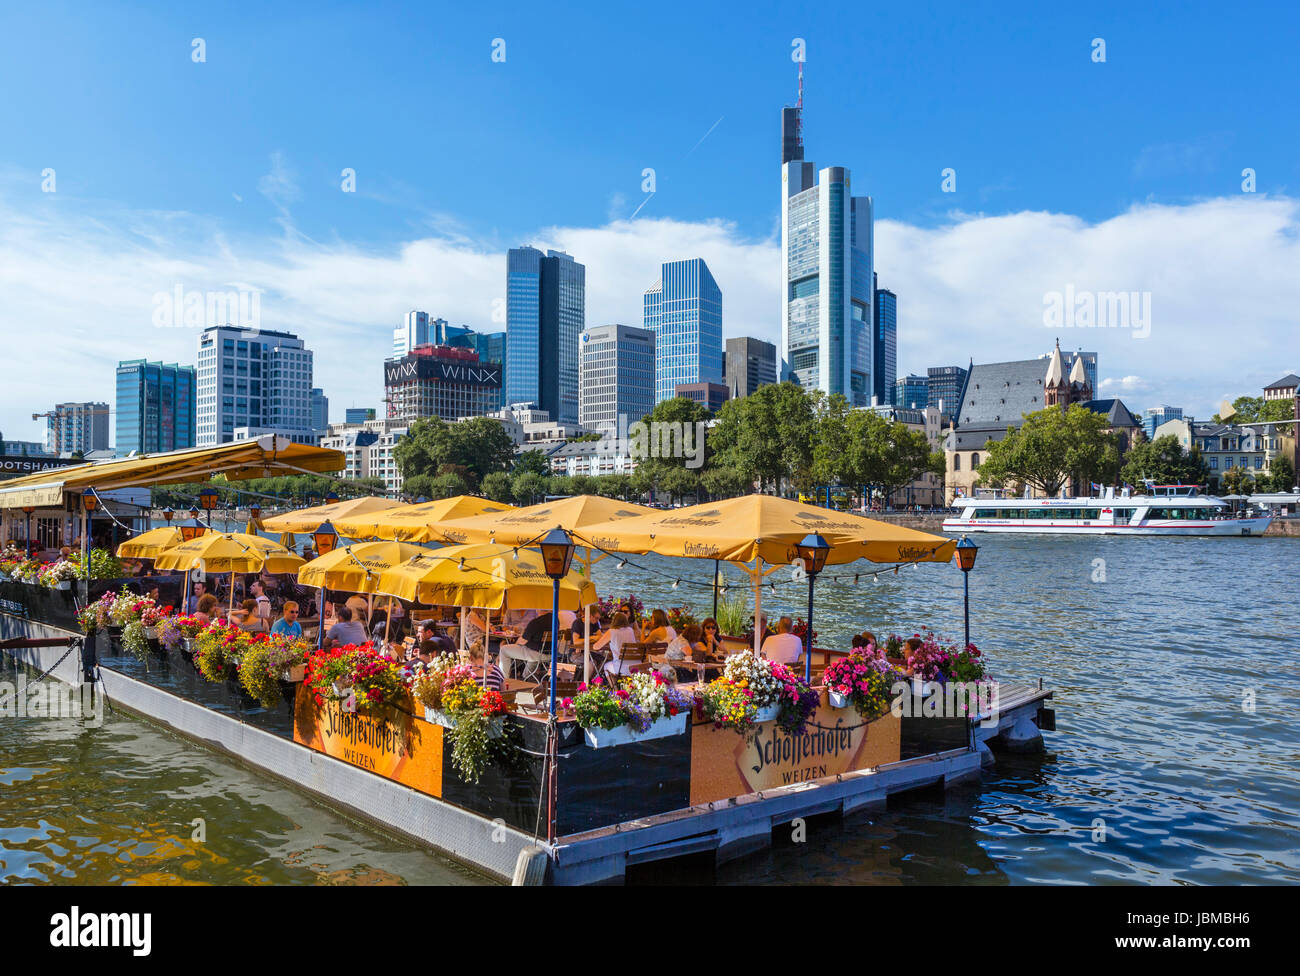 Schwimmendes Restaurant Bootshaus am Ufer des Mains mit der Skyline des Finanzzentrums hinter Frankfurt am Main, Hessen, Deutschland Stockfoto